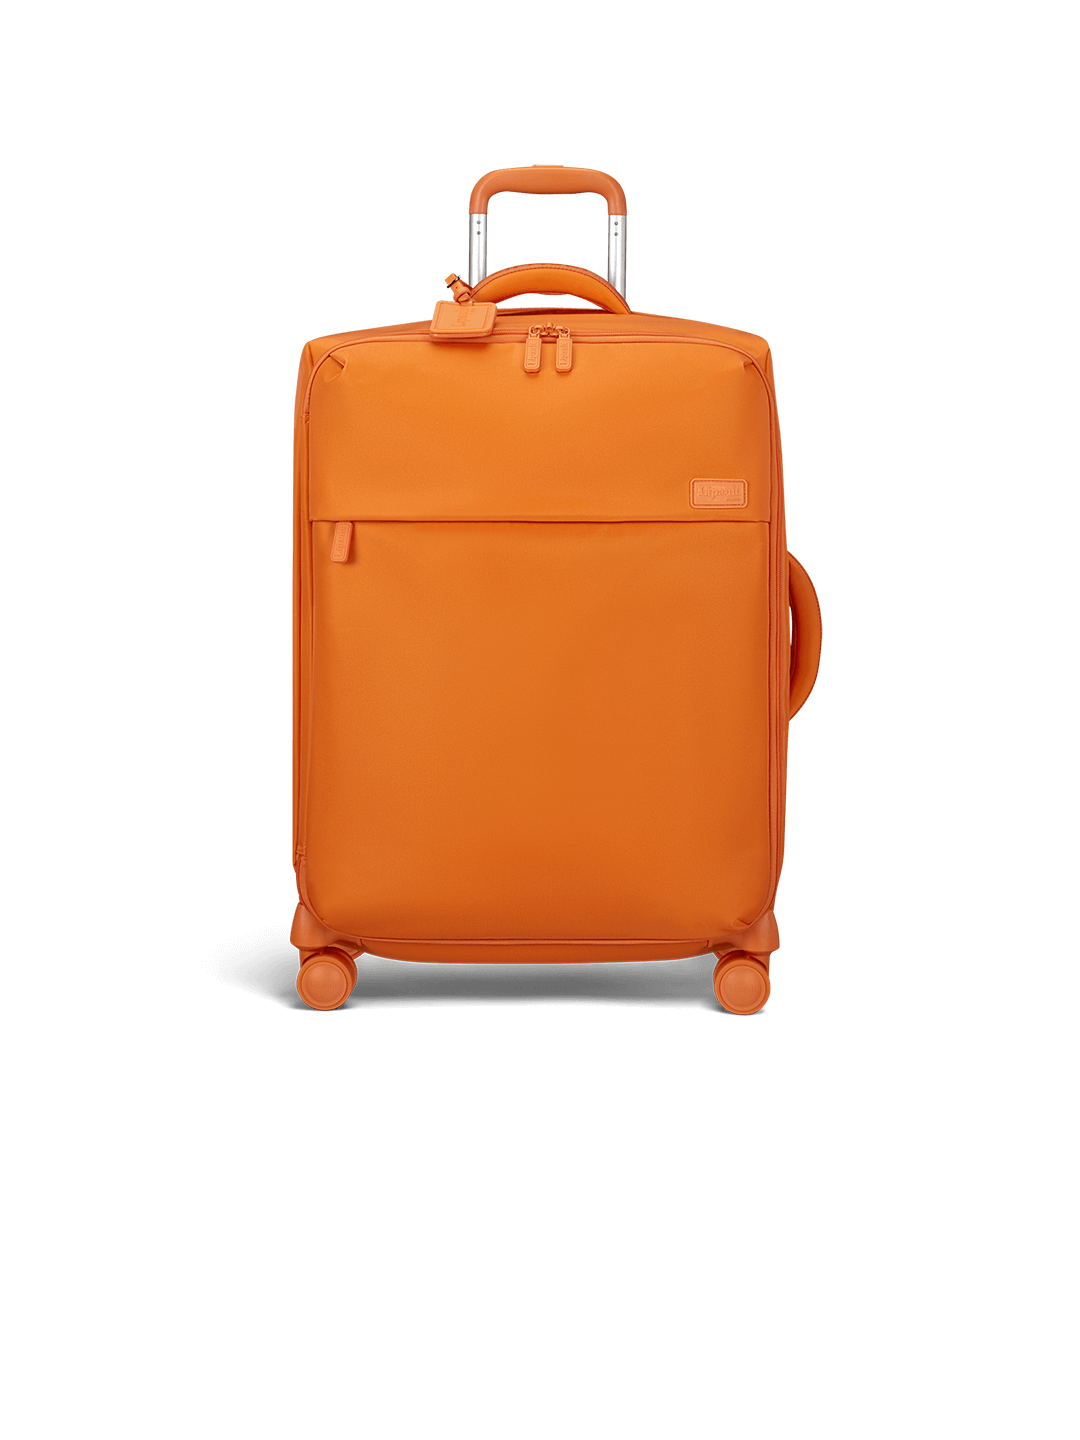 Housse de protection pour valise Plume M Synthétique Lipault en coloris Noir Femme Sacs Sacs de voyage et valises 